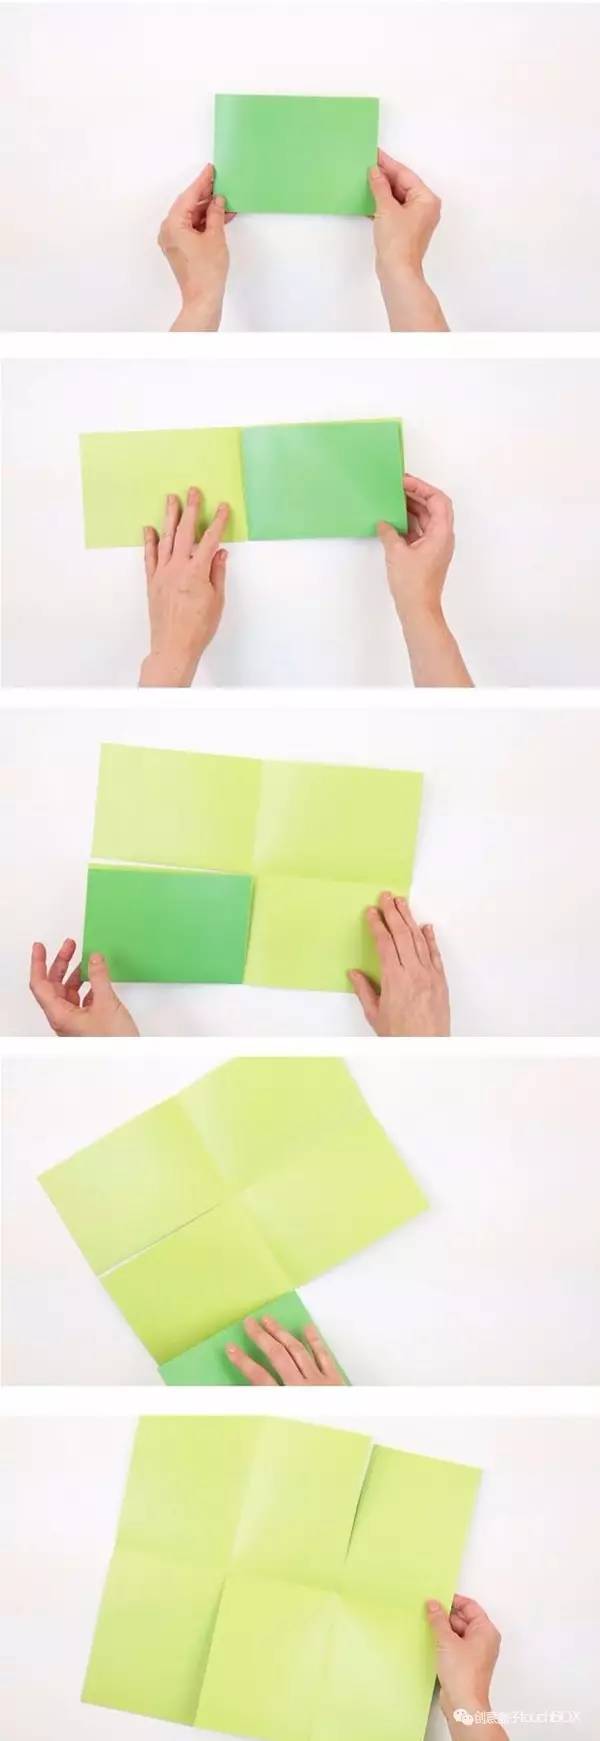 只要你有一张纸,就可以把它变成一本小书的方法:比如这样的六页书折法